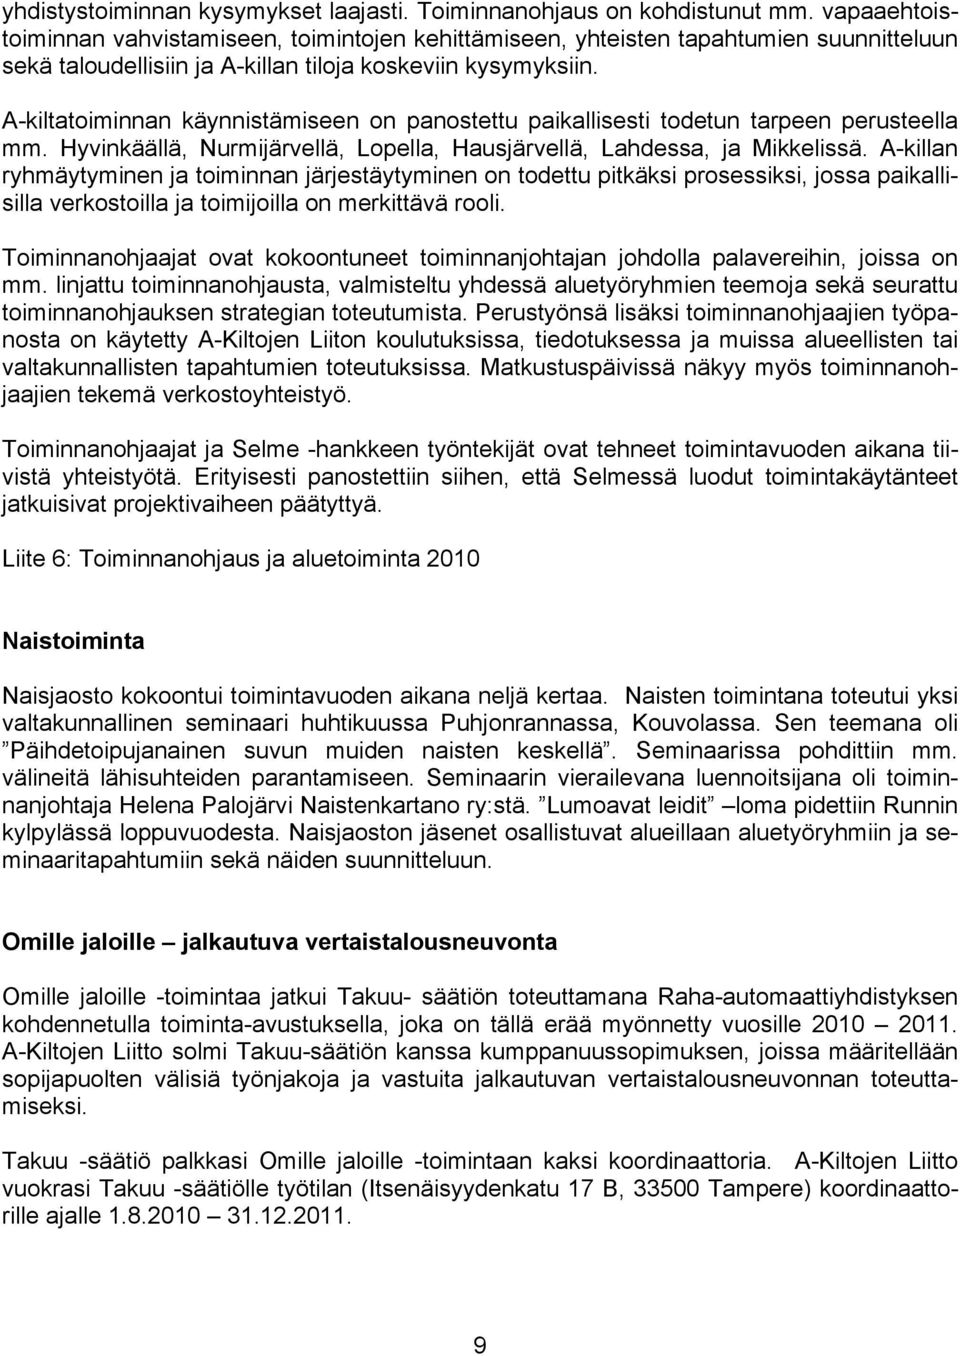 A-kiltatoiminnan käynnistämiseen on panostettu paikallisesti todetun tarpeen perusteella mm. Hyvinkäällä, Nurmijärvellä, Lopella, Hausjärvellä, Lahdessa, ja Mikkelissä.